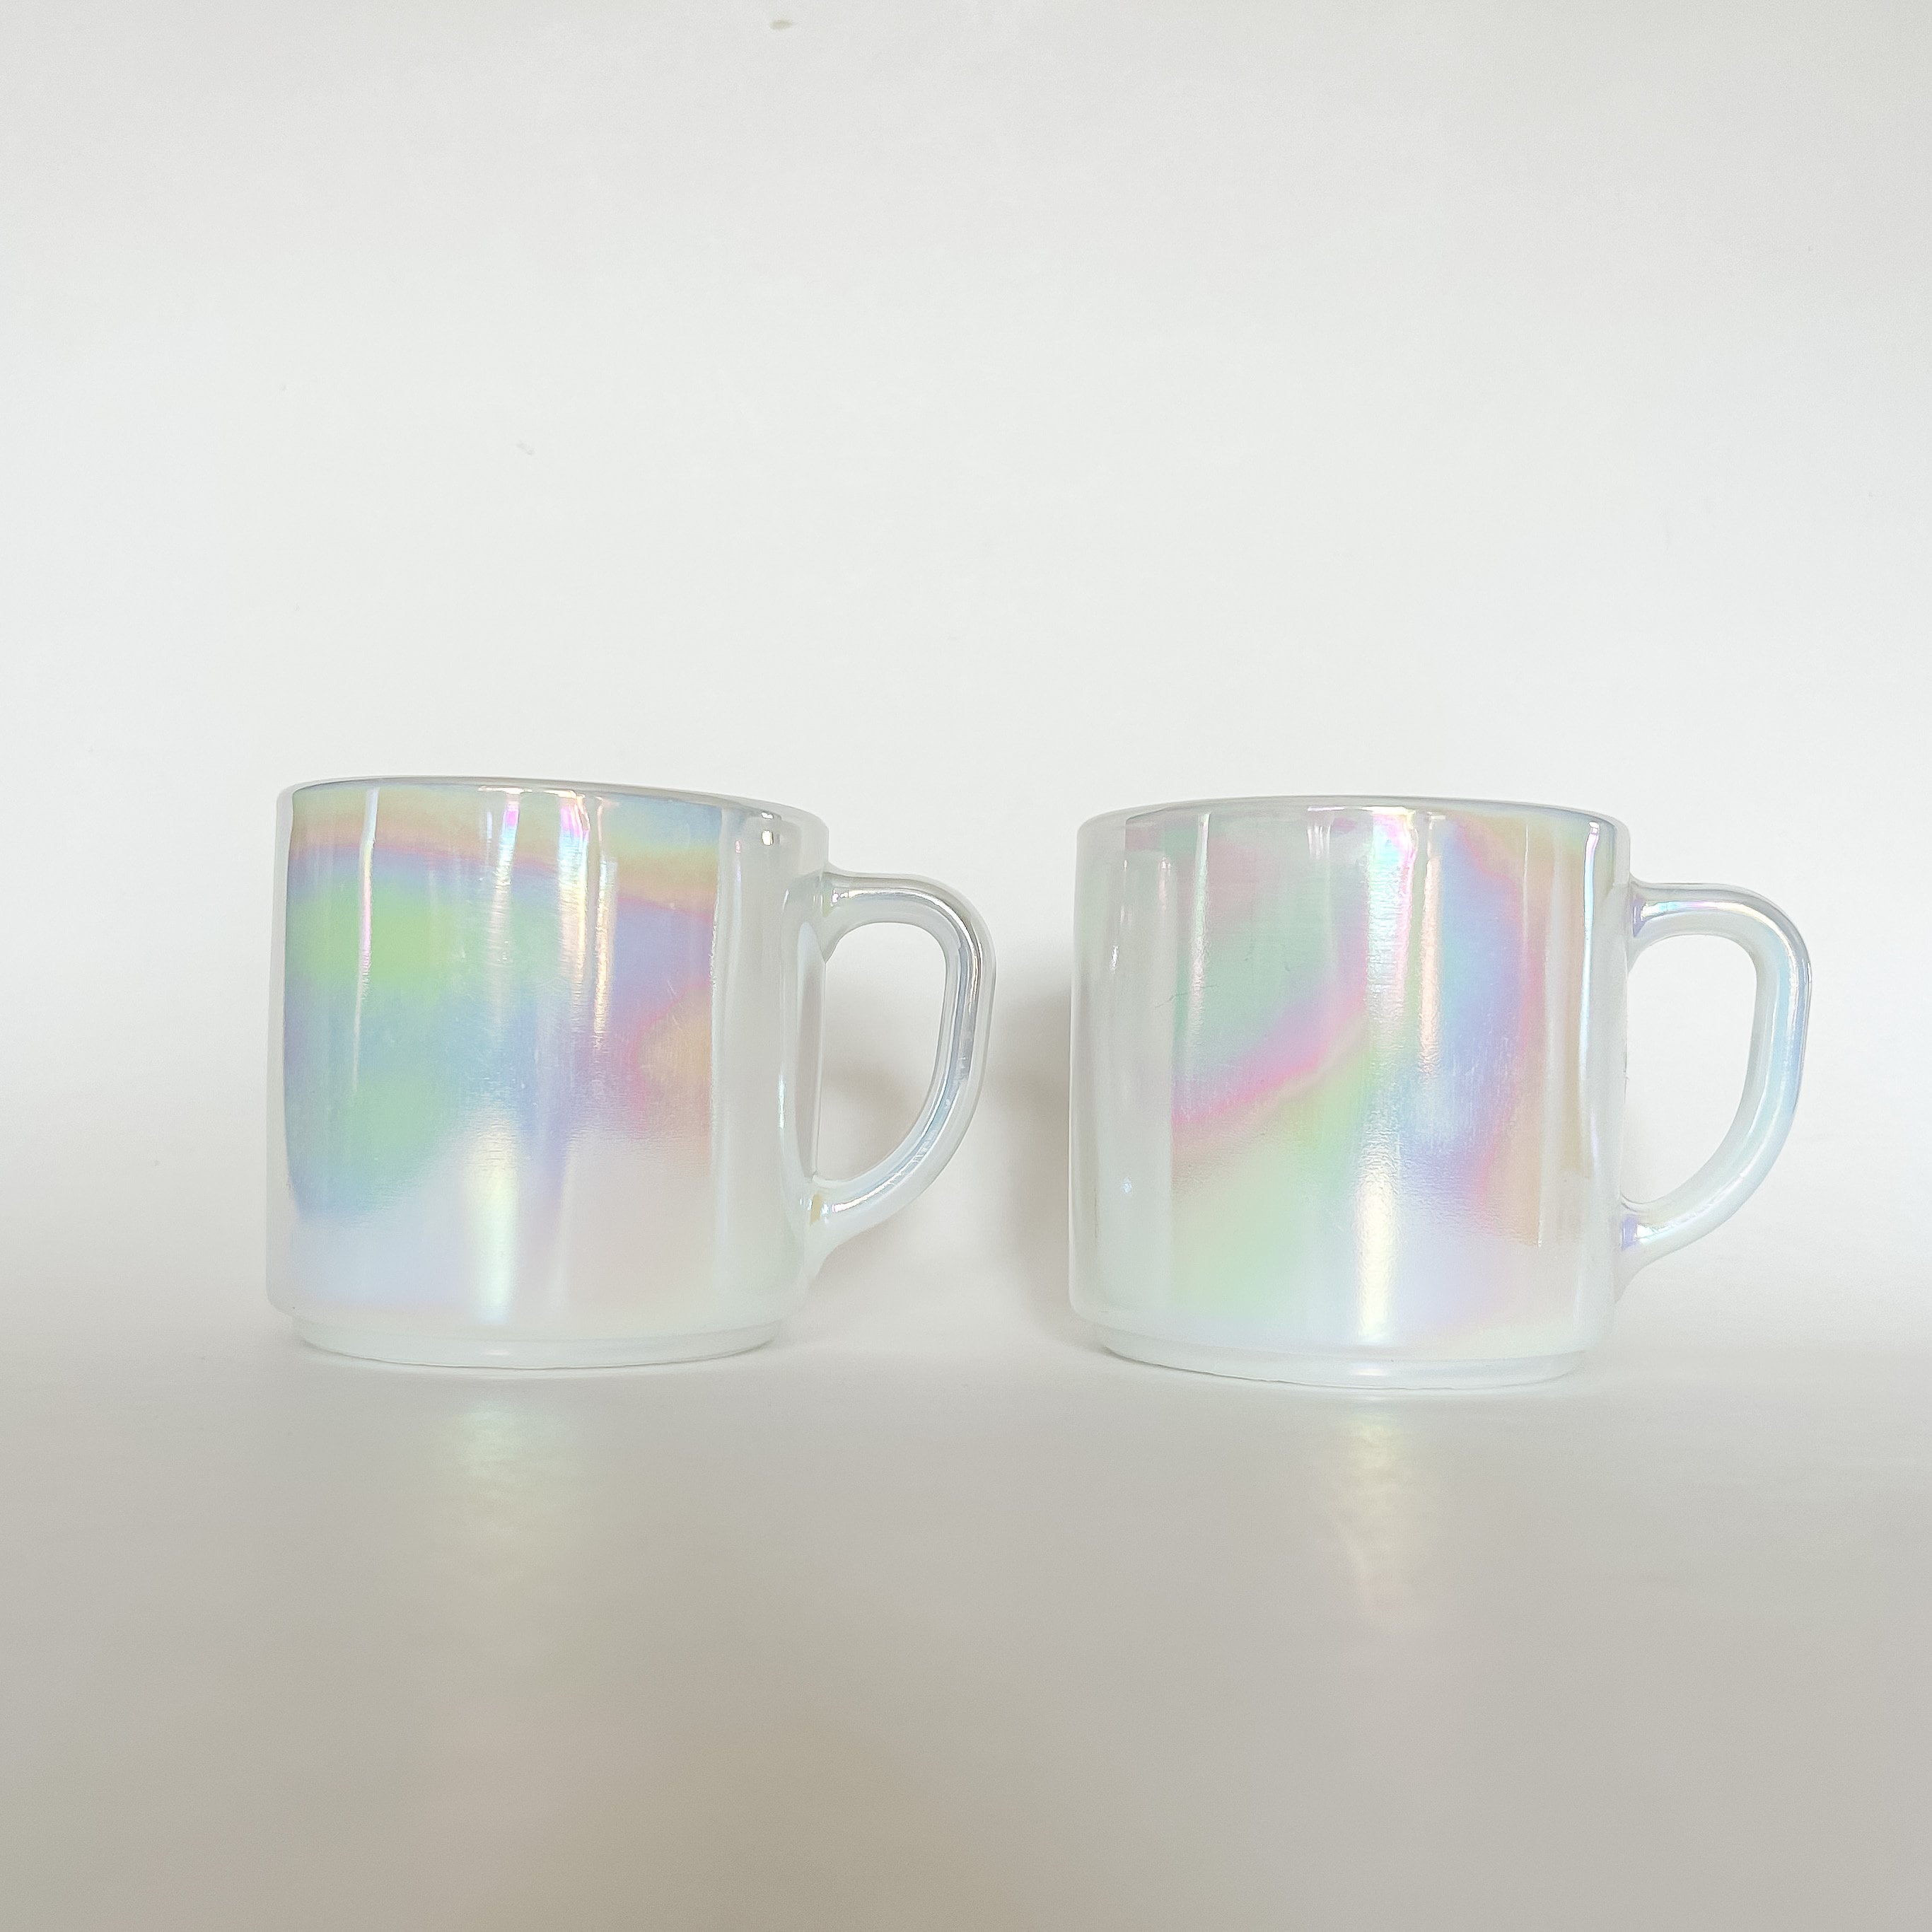 Joeyan Iridescent Glass Coffee Mugs Set of 2-11.5 oz Striped